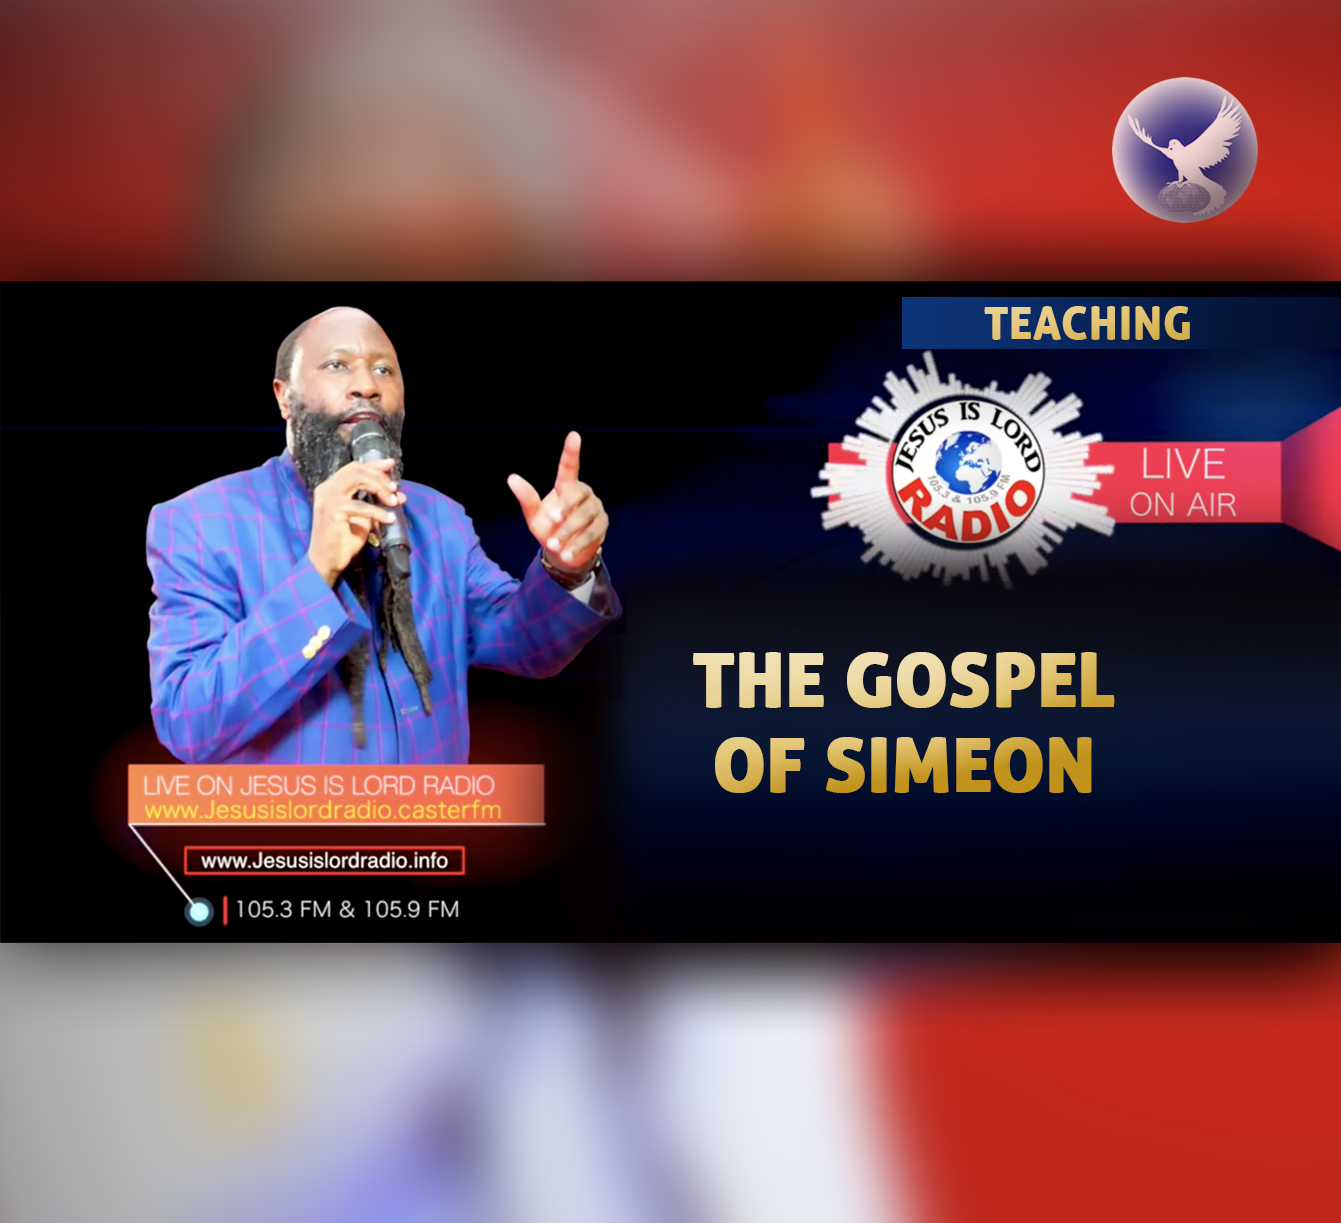 EPISODE 203 - THE GOSPEL OF SIMEON - PROPHET DR. OWUOR